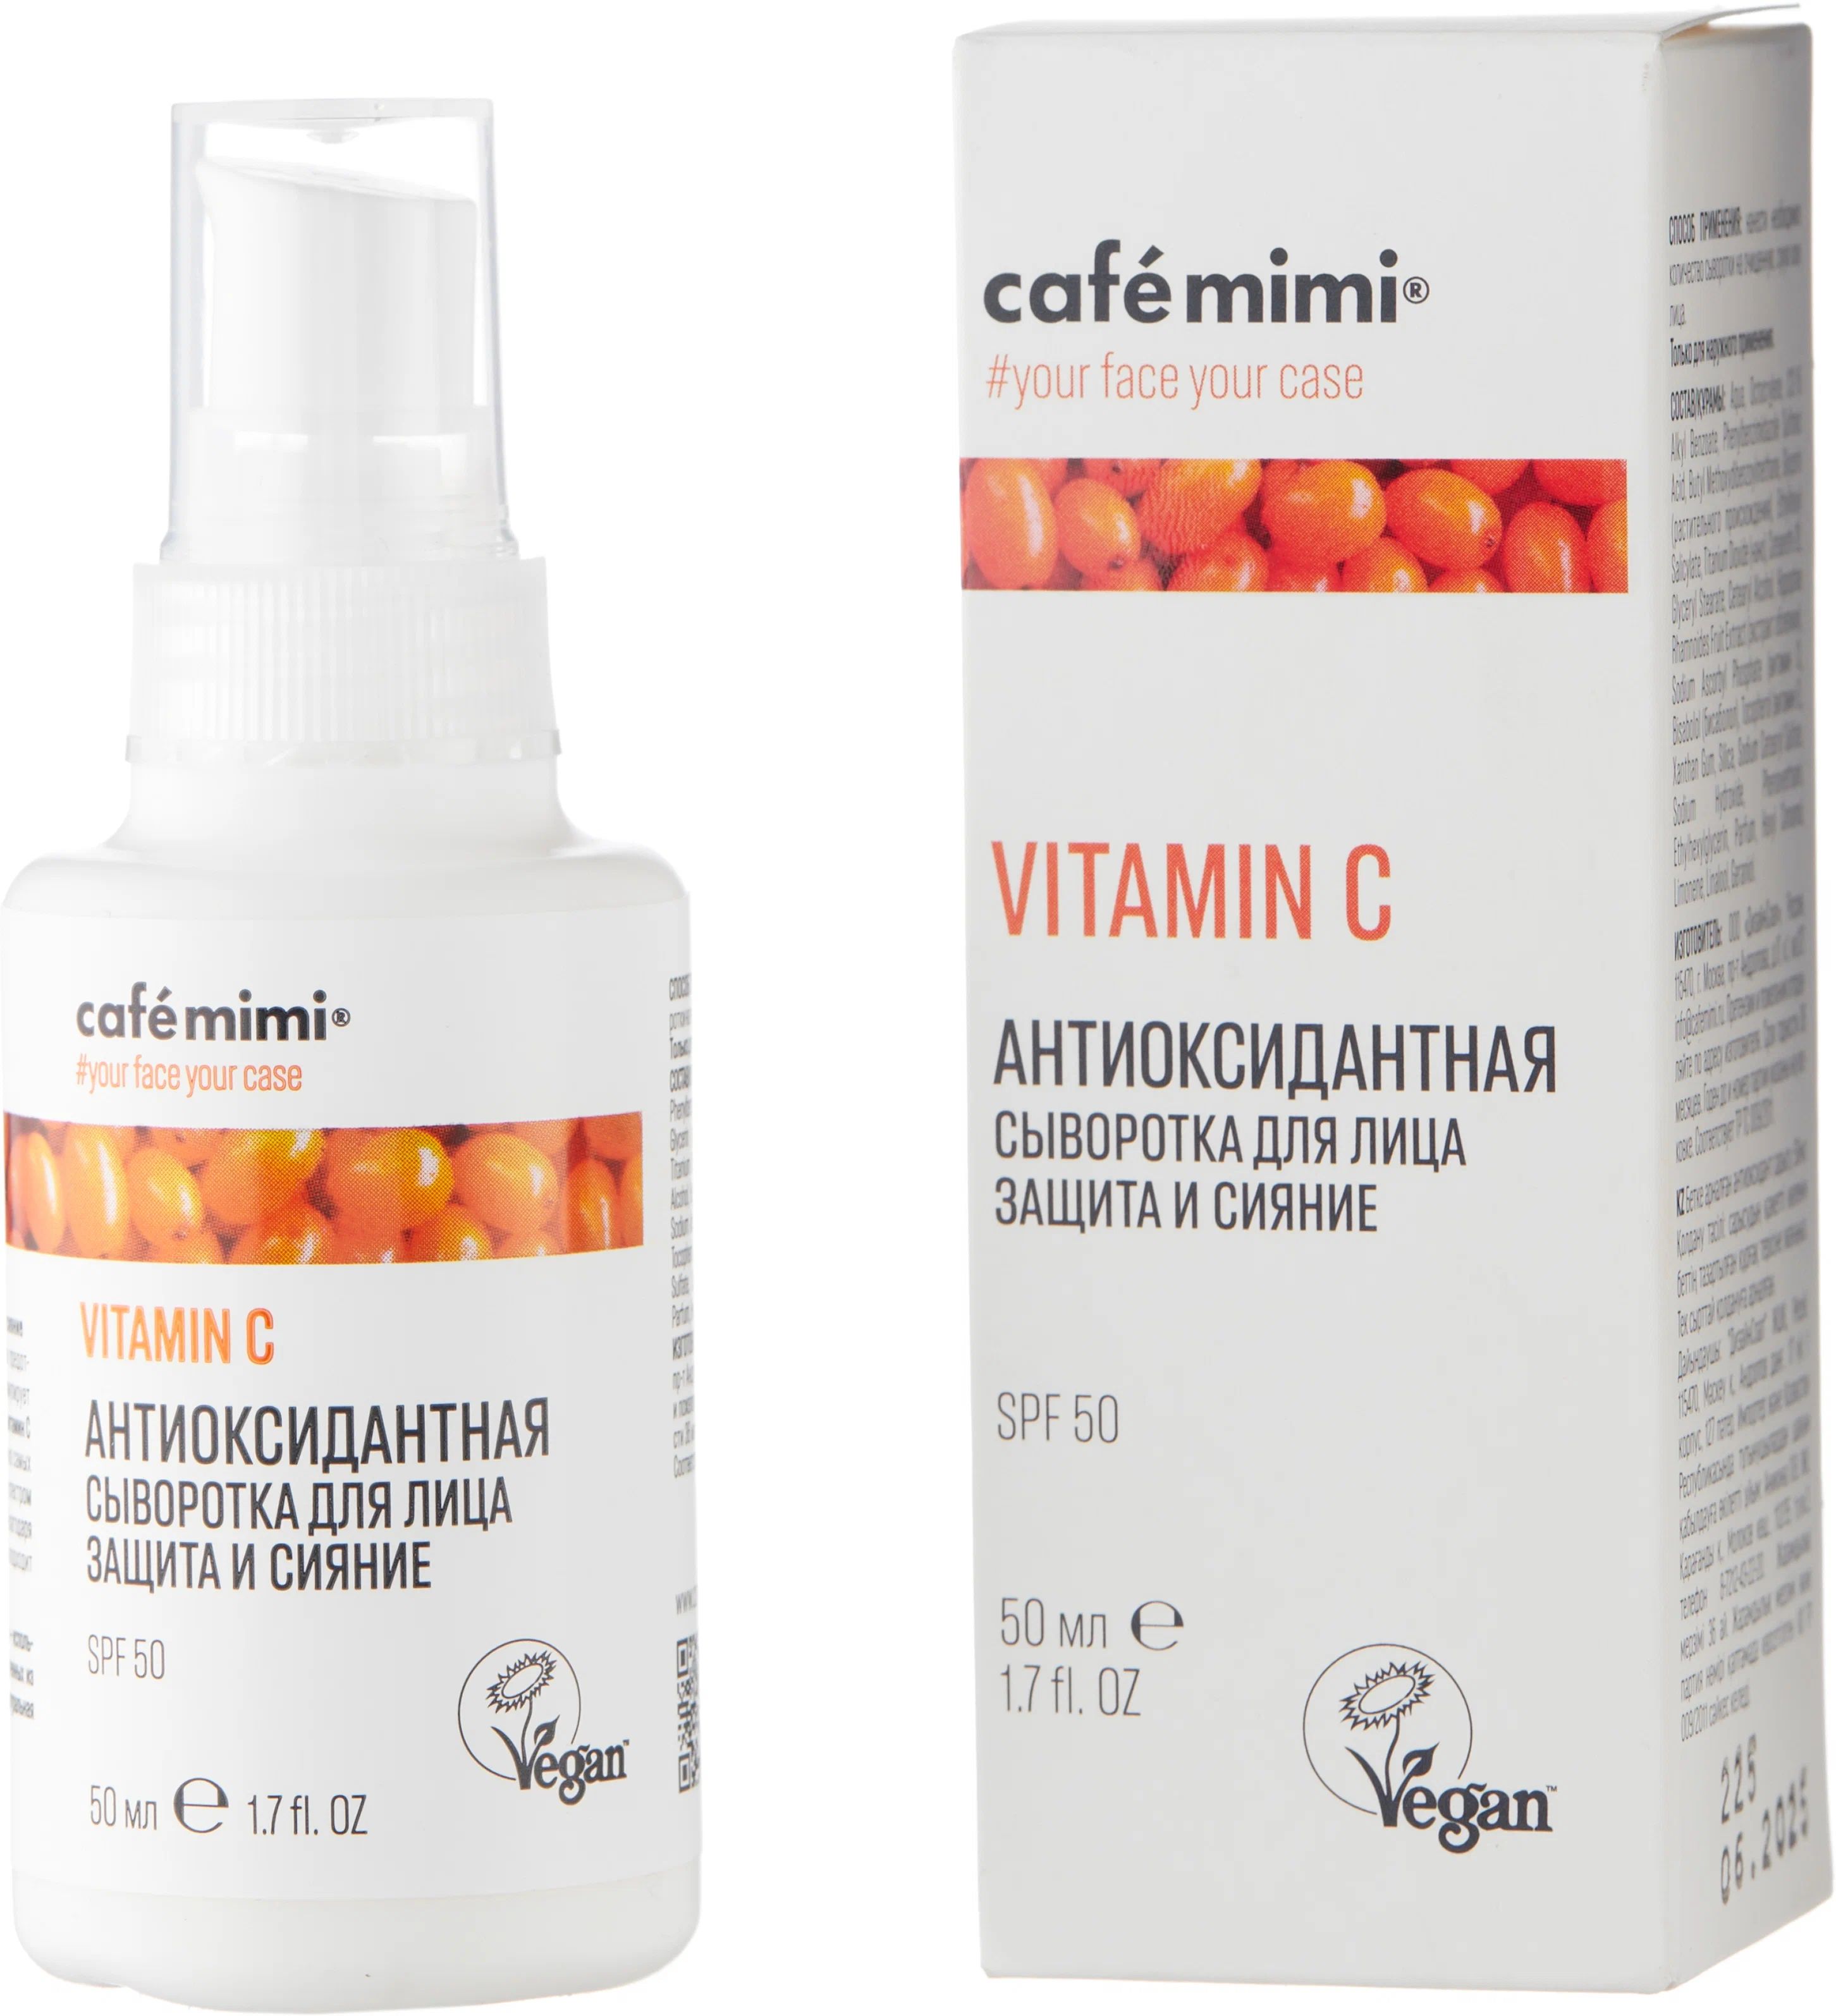 Антиоксидантная сыворотка для лица Cafe mimi Защита и сияние SPF50 50 мл